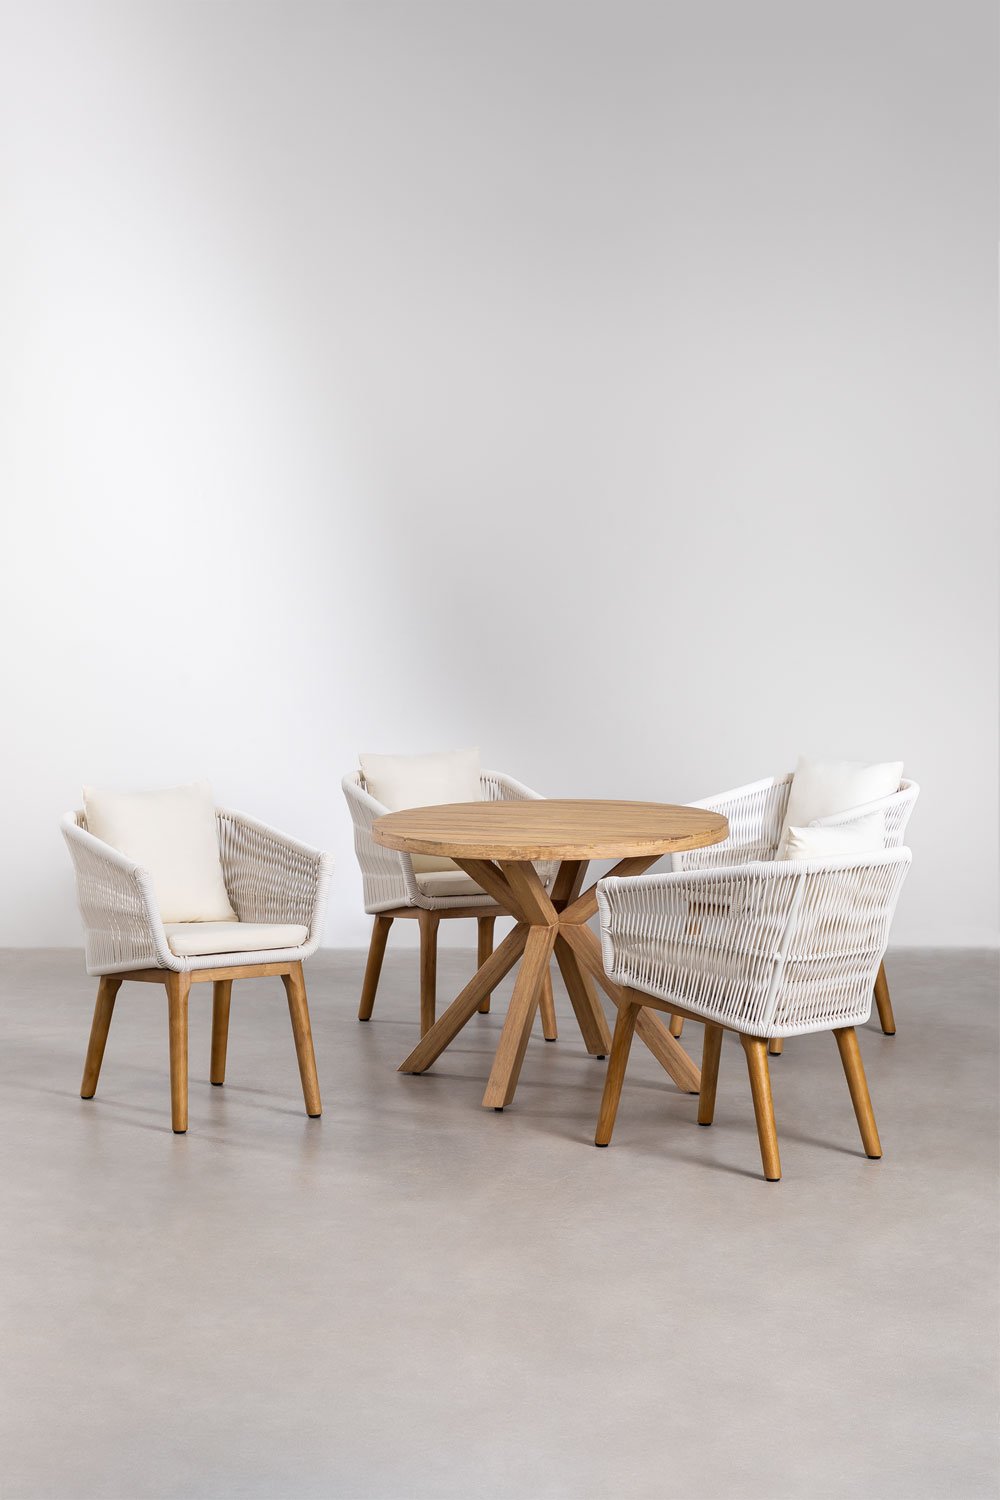 Okrągły drewniany stół (Ø100 cm) Naele i 4 krzesła ogrodowe Barker, obrazek w galerii 1